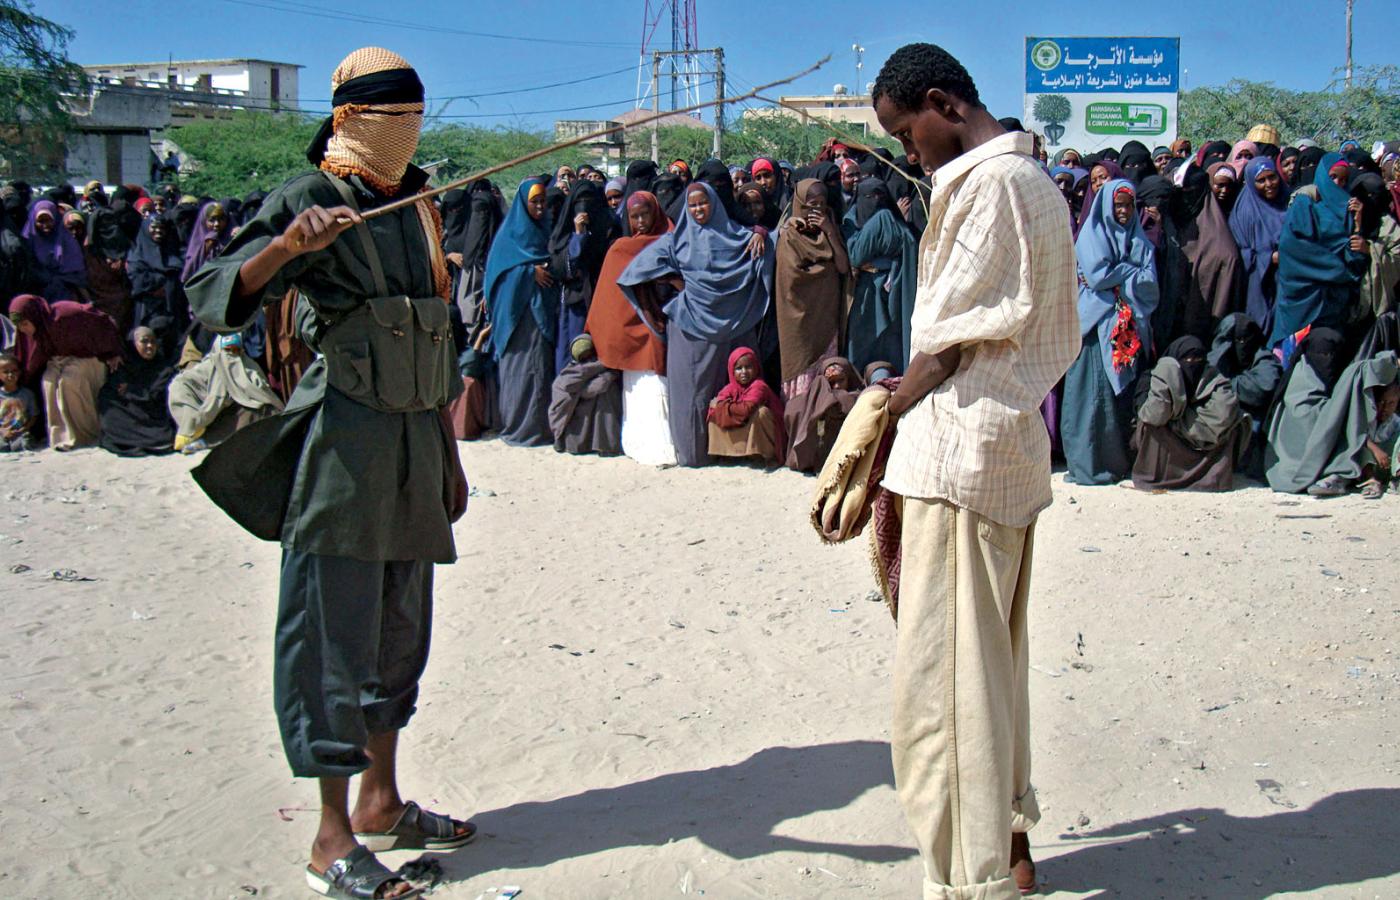 Pokaz działania prawa szariatu - przygotowanie do publicznego wychłostania człowieka przyłapanego na żuciu liści katu, popularnej używki w Somalii.